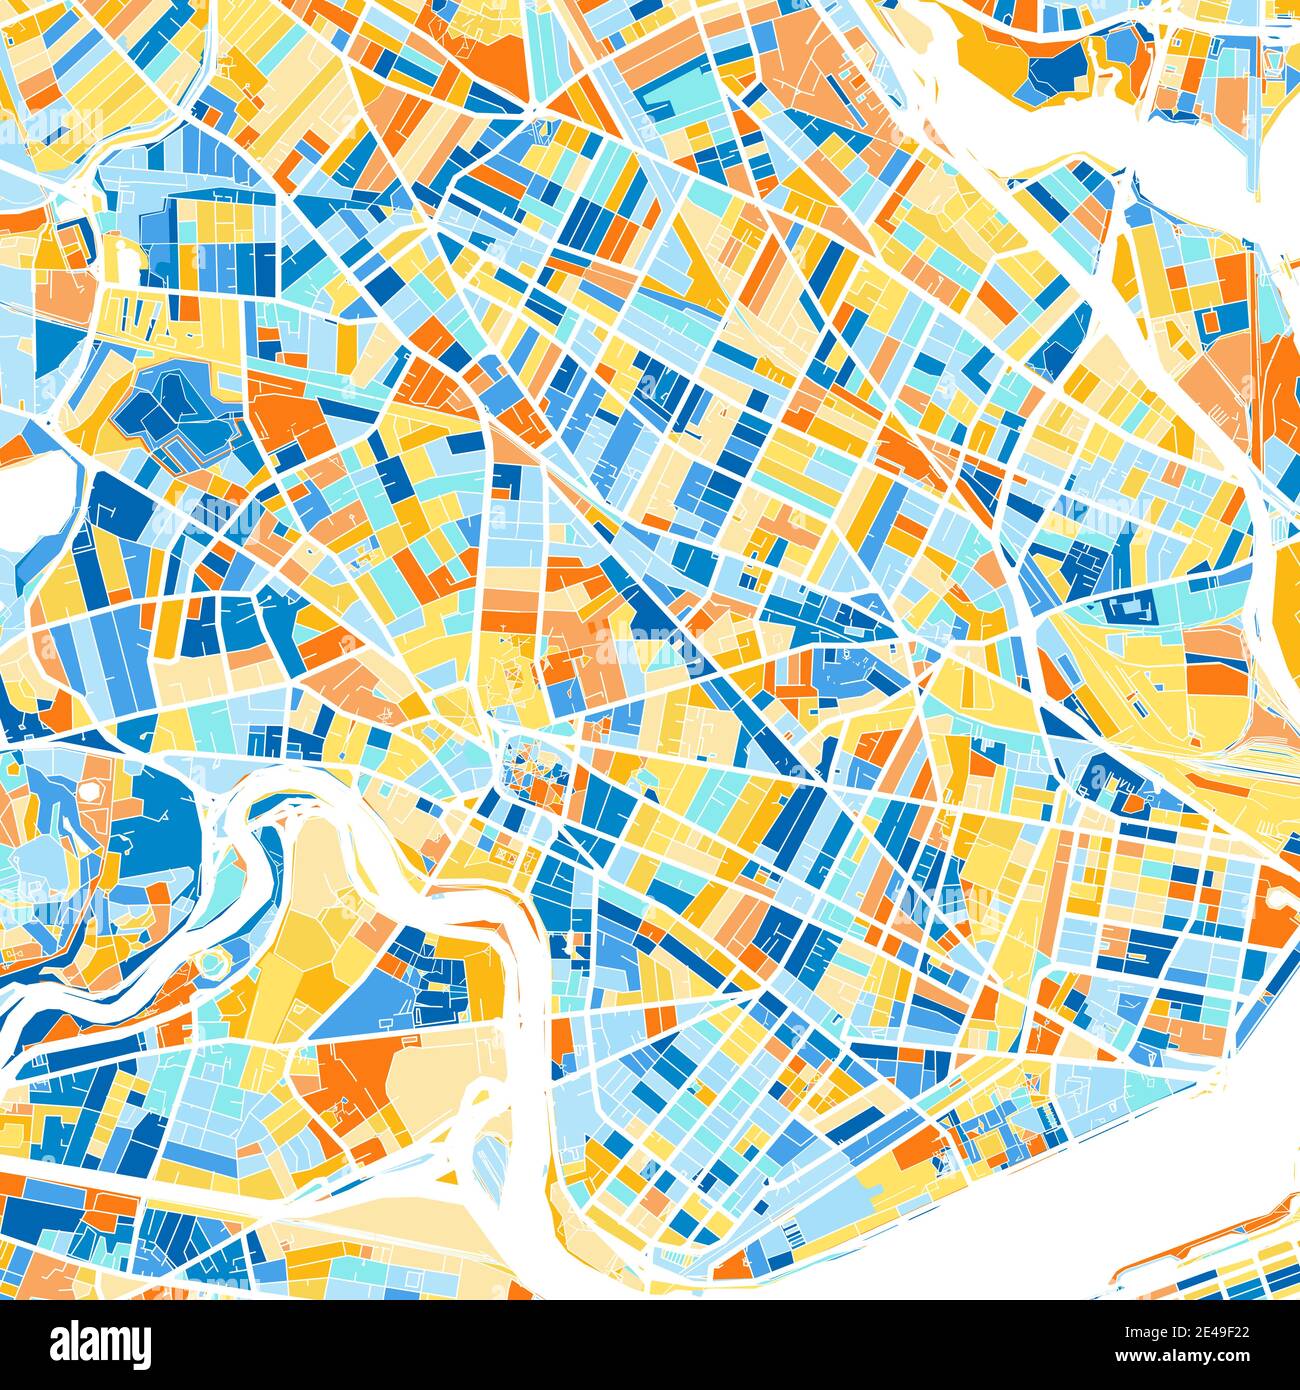 Farbkunstkarte von Cambridge, Massachusetts, UnitedStates in Blau und Orangen. Die Farbabstufungen in der Cambridge-Karte folgen einem zufälligen Muster. Stock Vektor